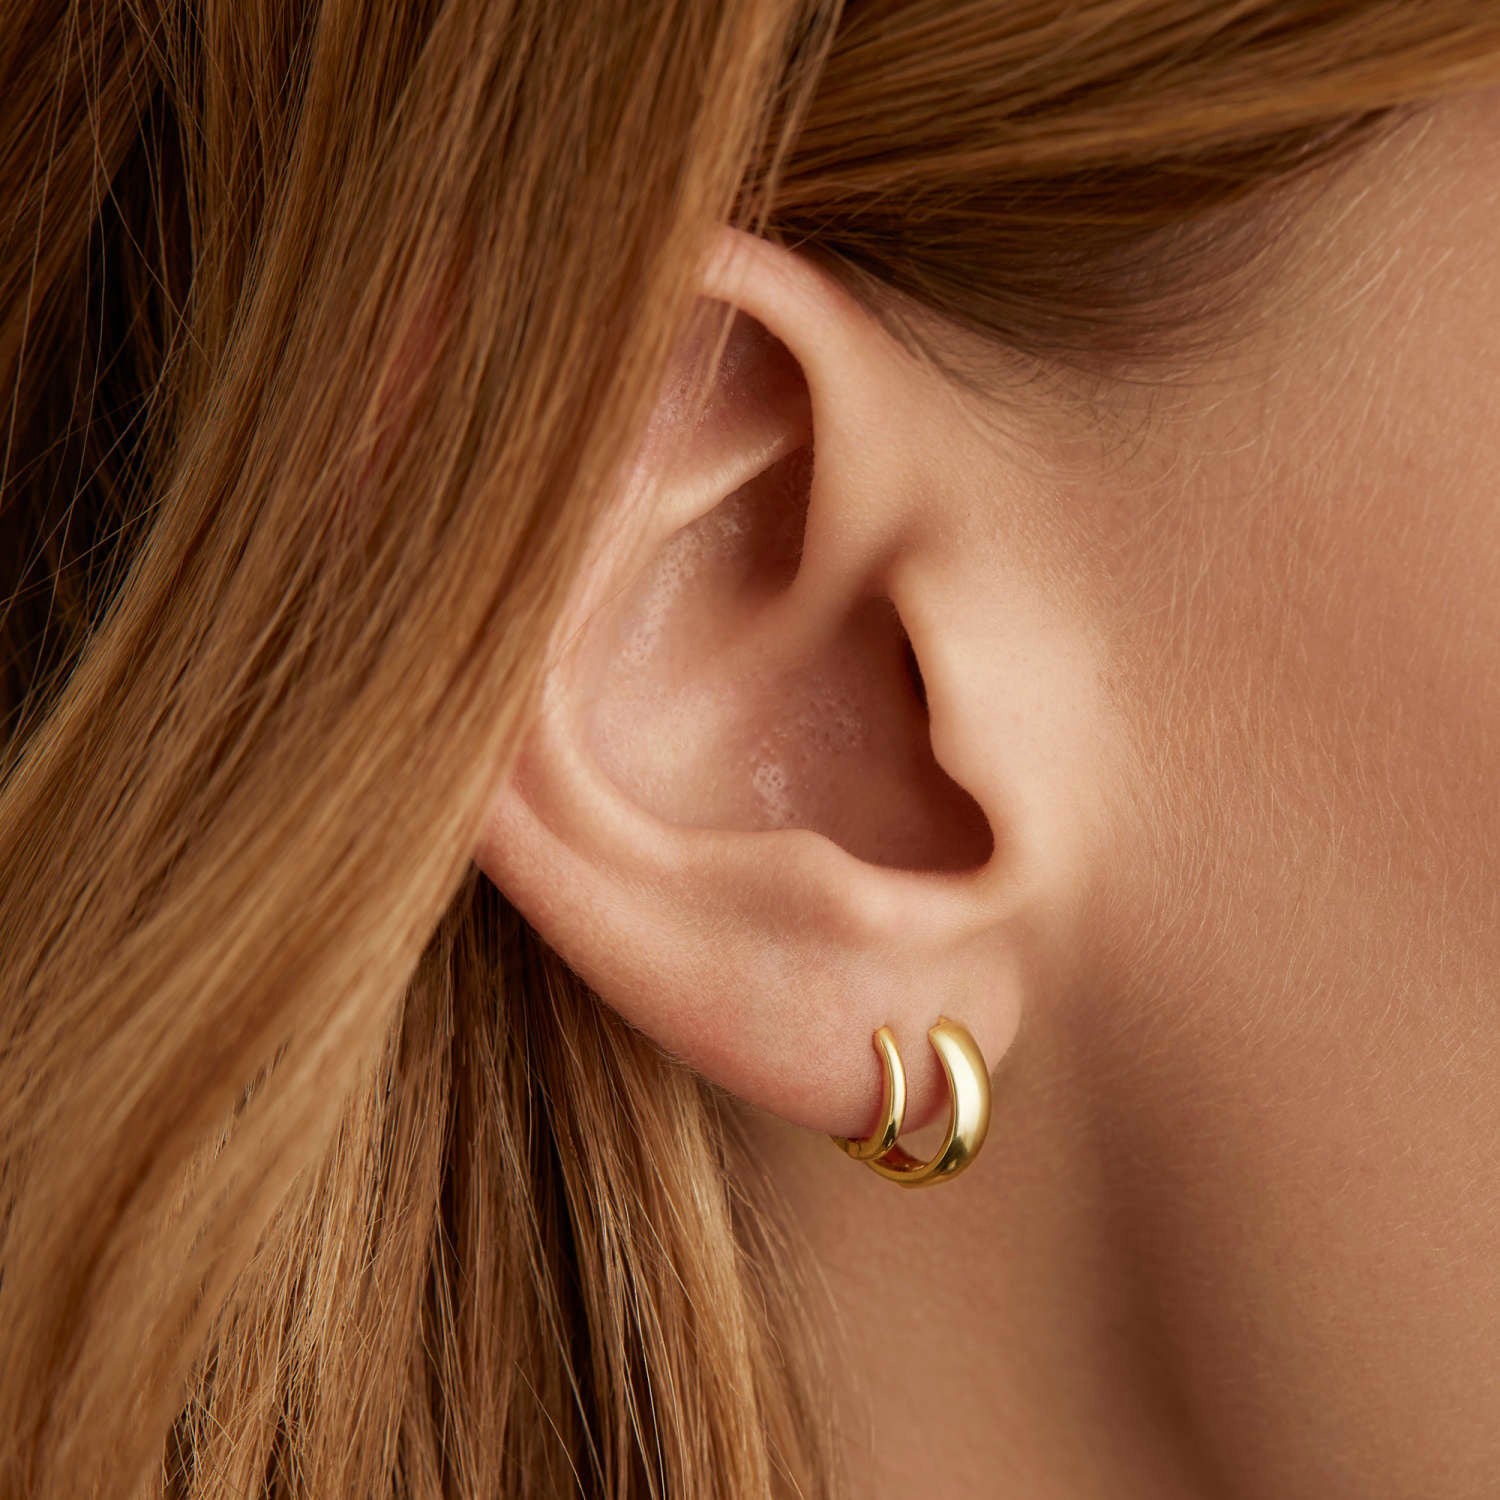 Hoop Earrings, Small Hoop Earrings, 14K White Gold Earrings 14K White Gold / 18mm